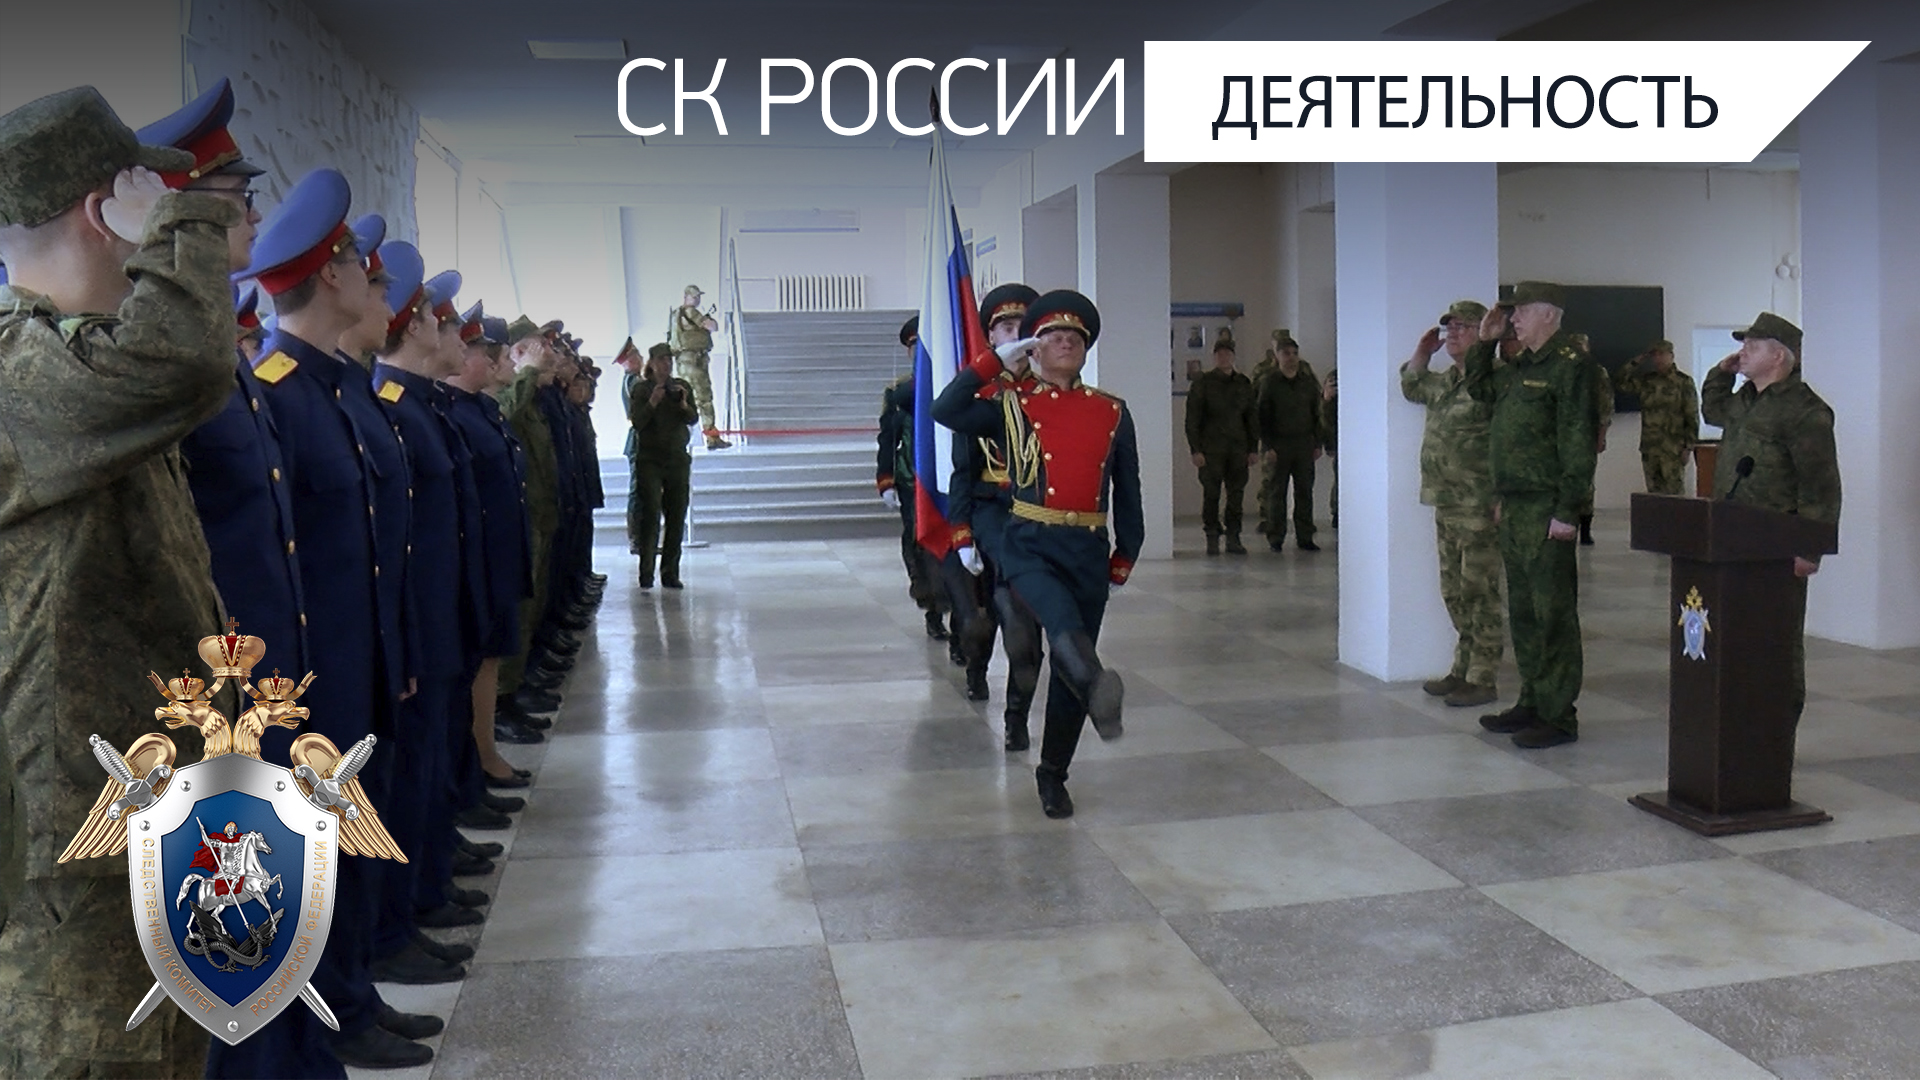 Председатель СК России открыл академию и кадетский корпус ведомства в Луганске